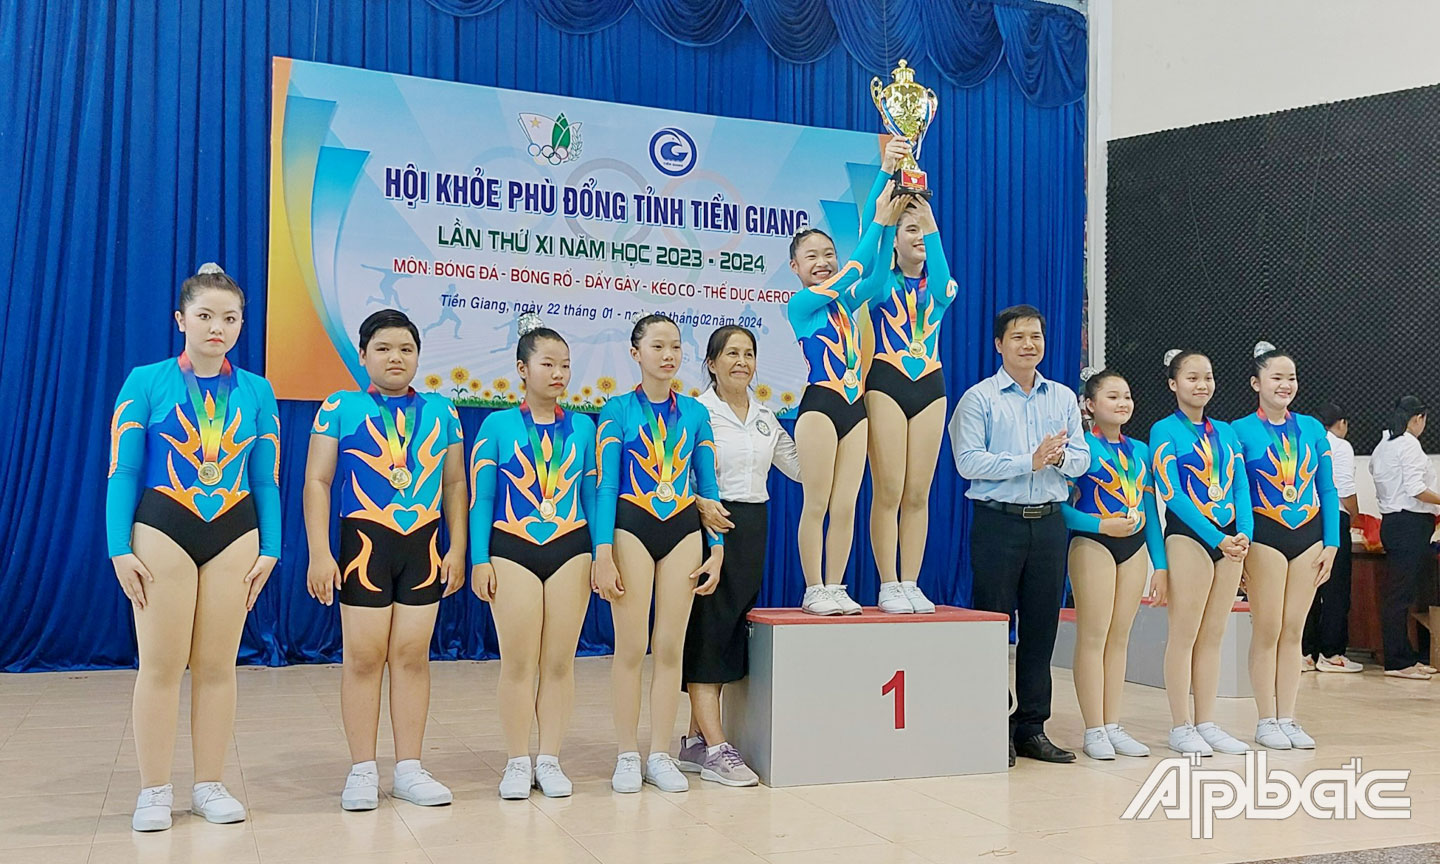 Trao giải môn thể dục nhịp điệu tại HKPĐ tỉnh Tiền Giang lần thứ XI.